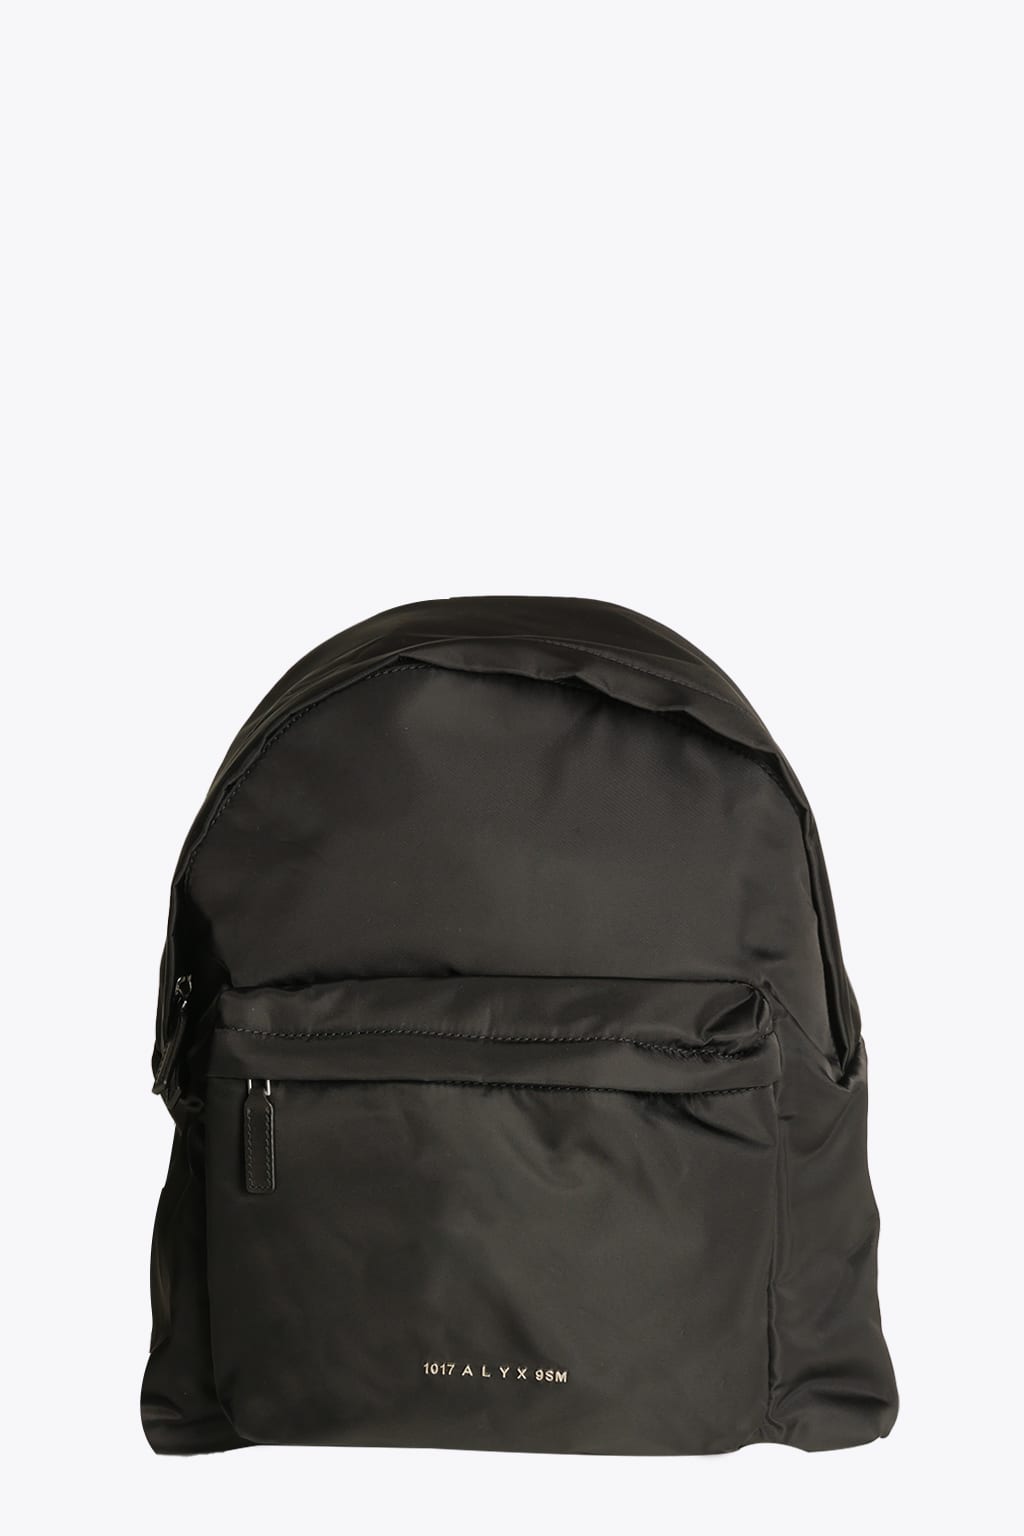 1017 ALYX 9SM Buckle Shoulder Straps Backpack Black nylon backpack - Buckle shoulder straps backpack